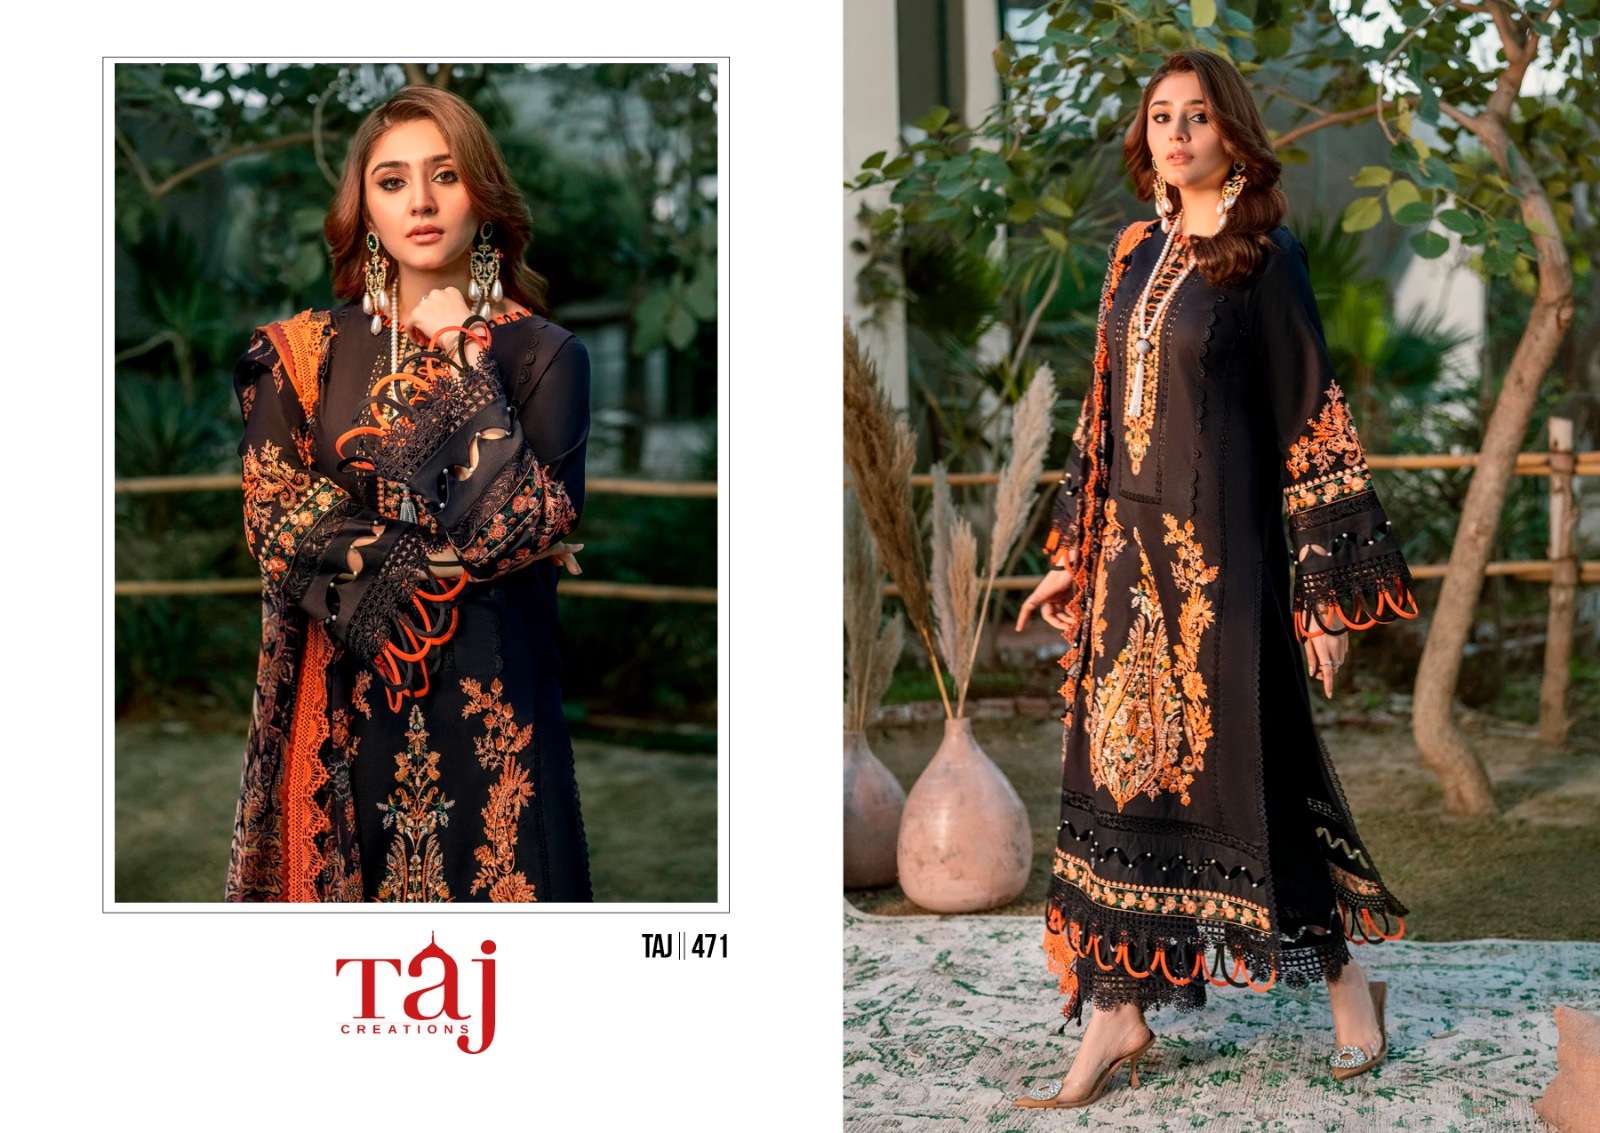 Taj 470 And 471 Chiffon Dupatta Pakistani Suits Wholesale catalog